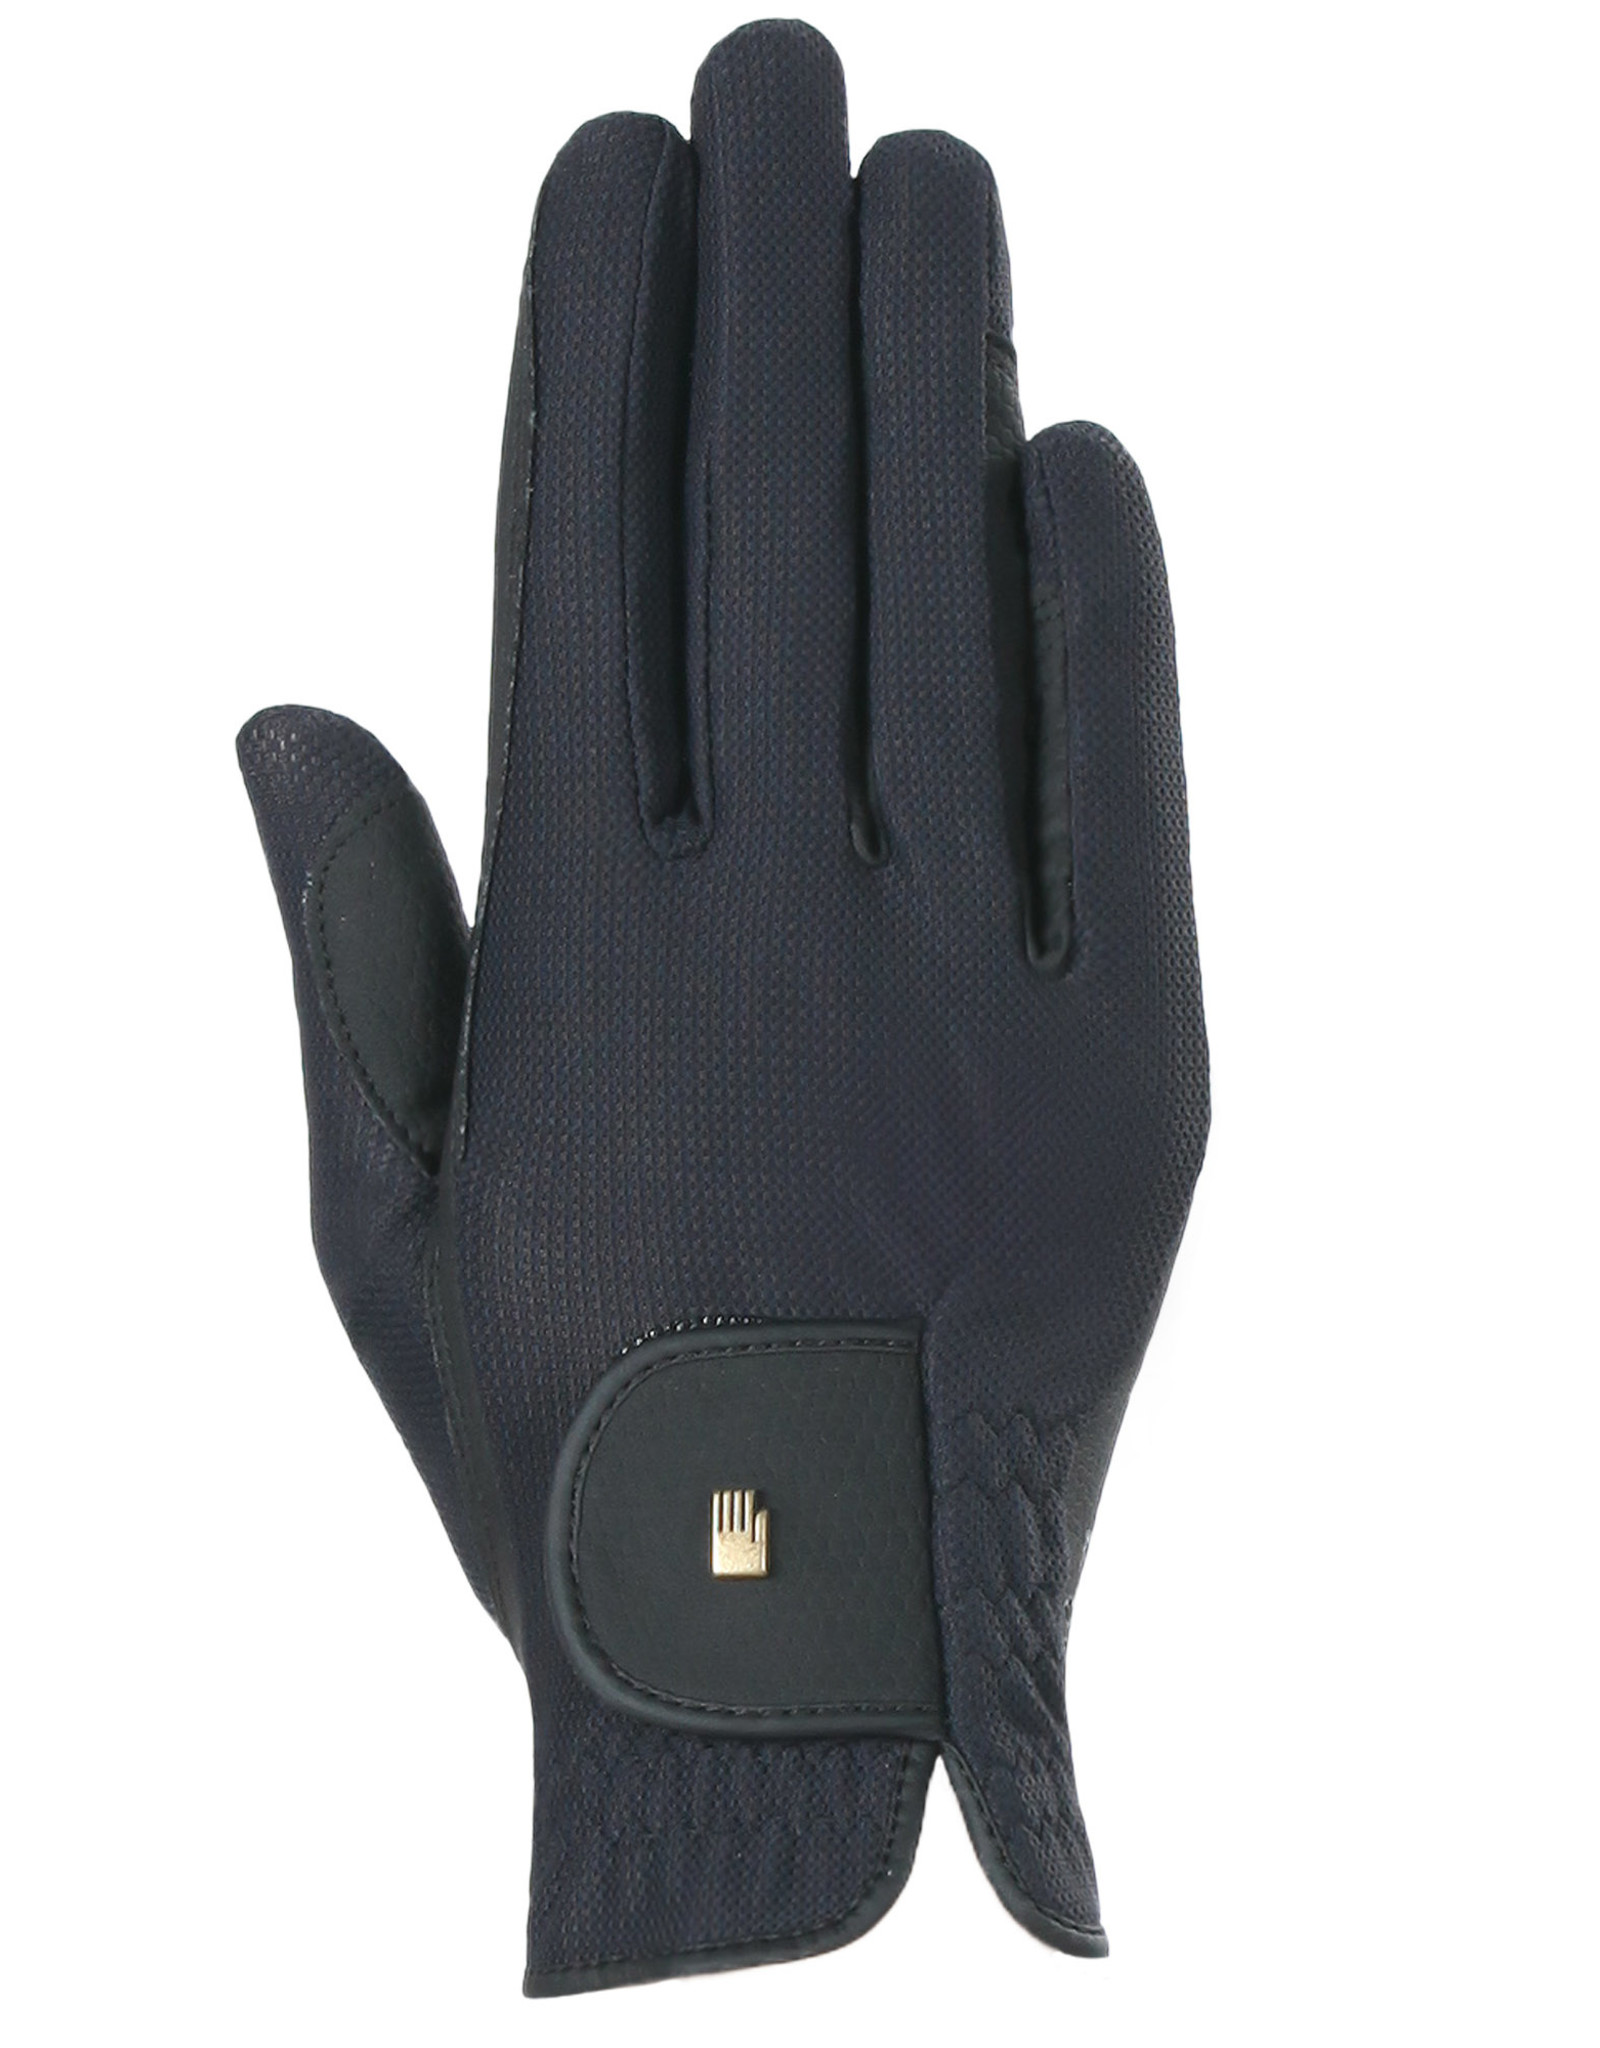 Roeckl Roeck-Grip Lite Unisex Glove